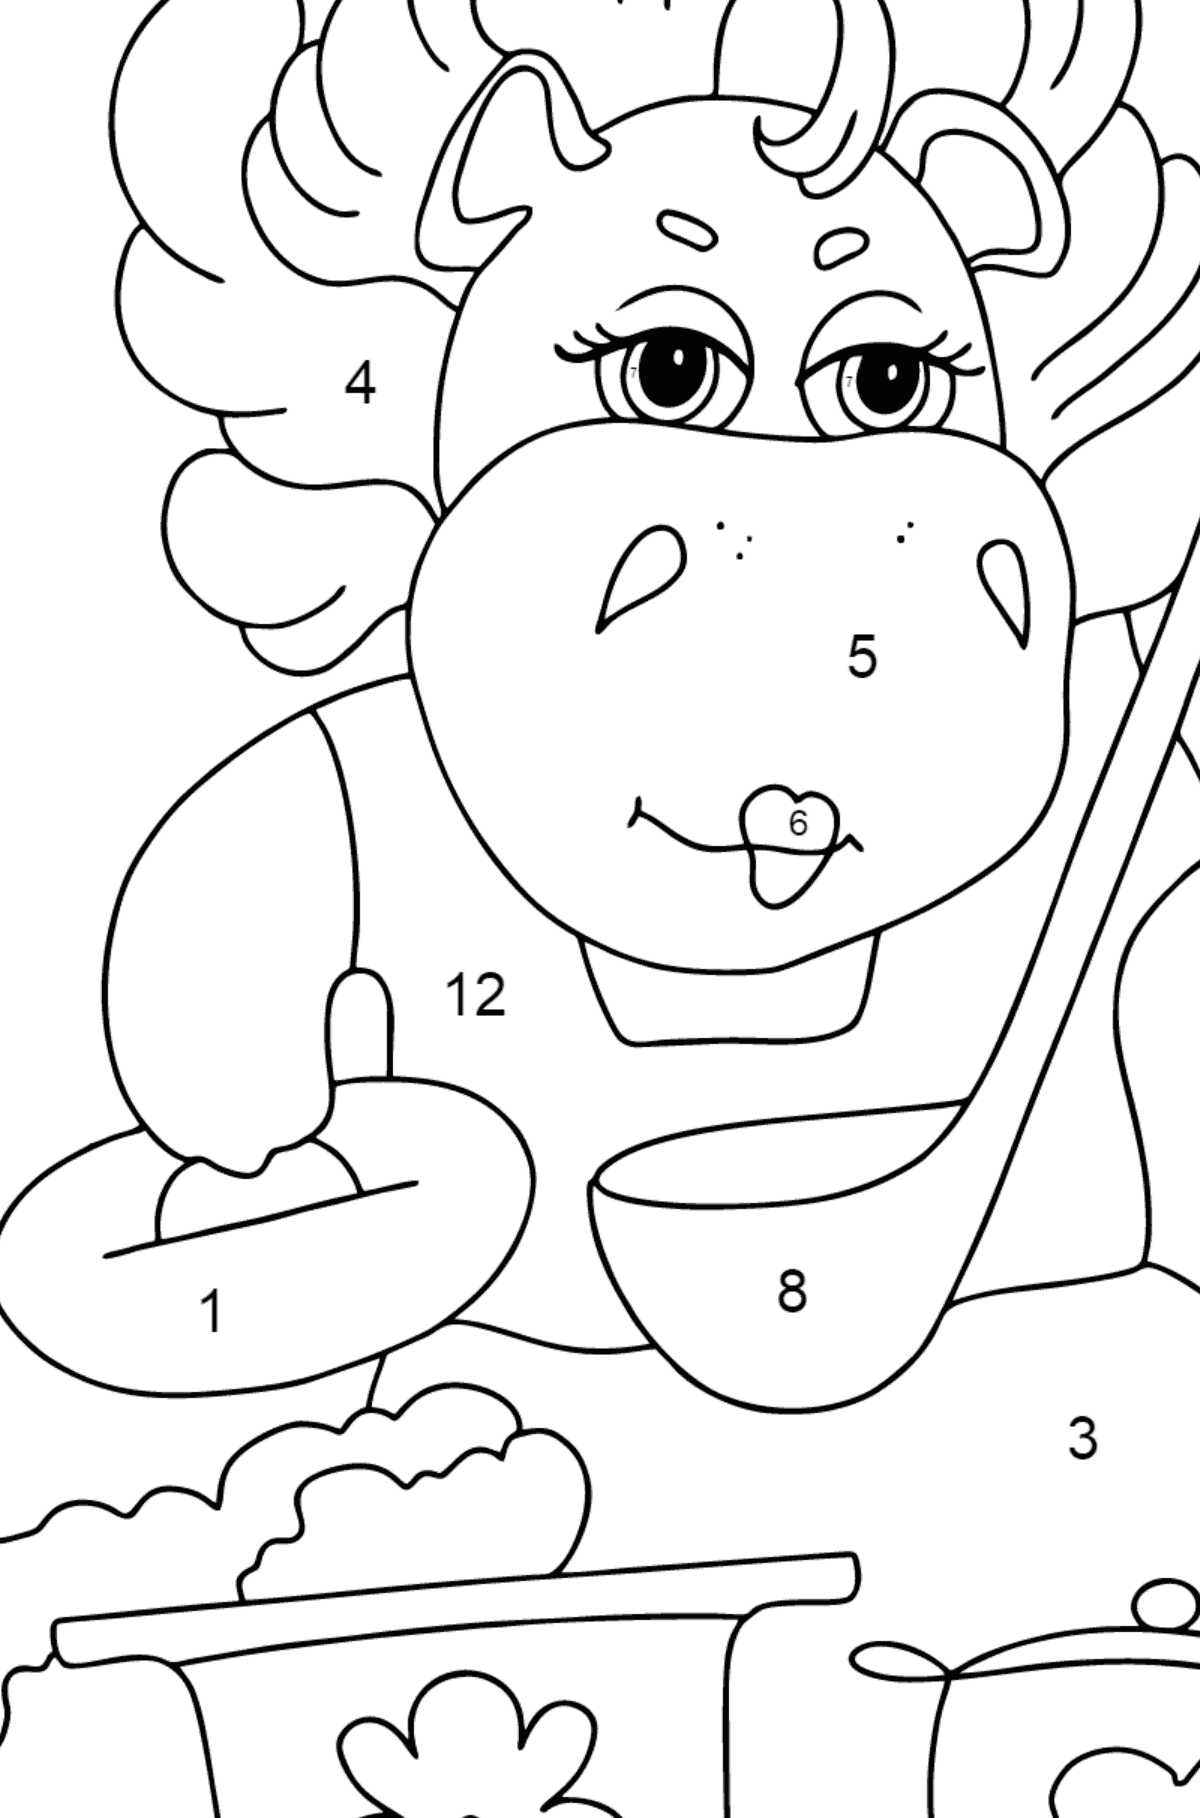 Målarbild magisk flodhäst (lätt) - Färgläggning efter nummer För barn